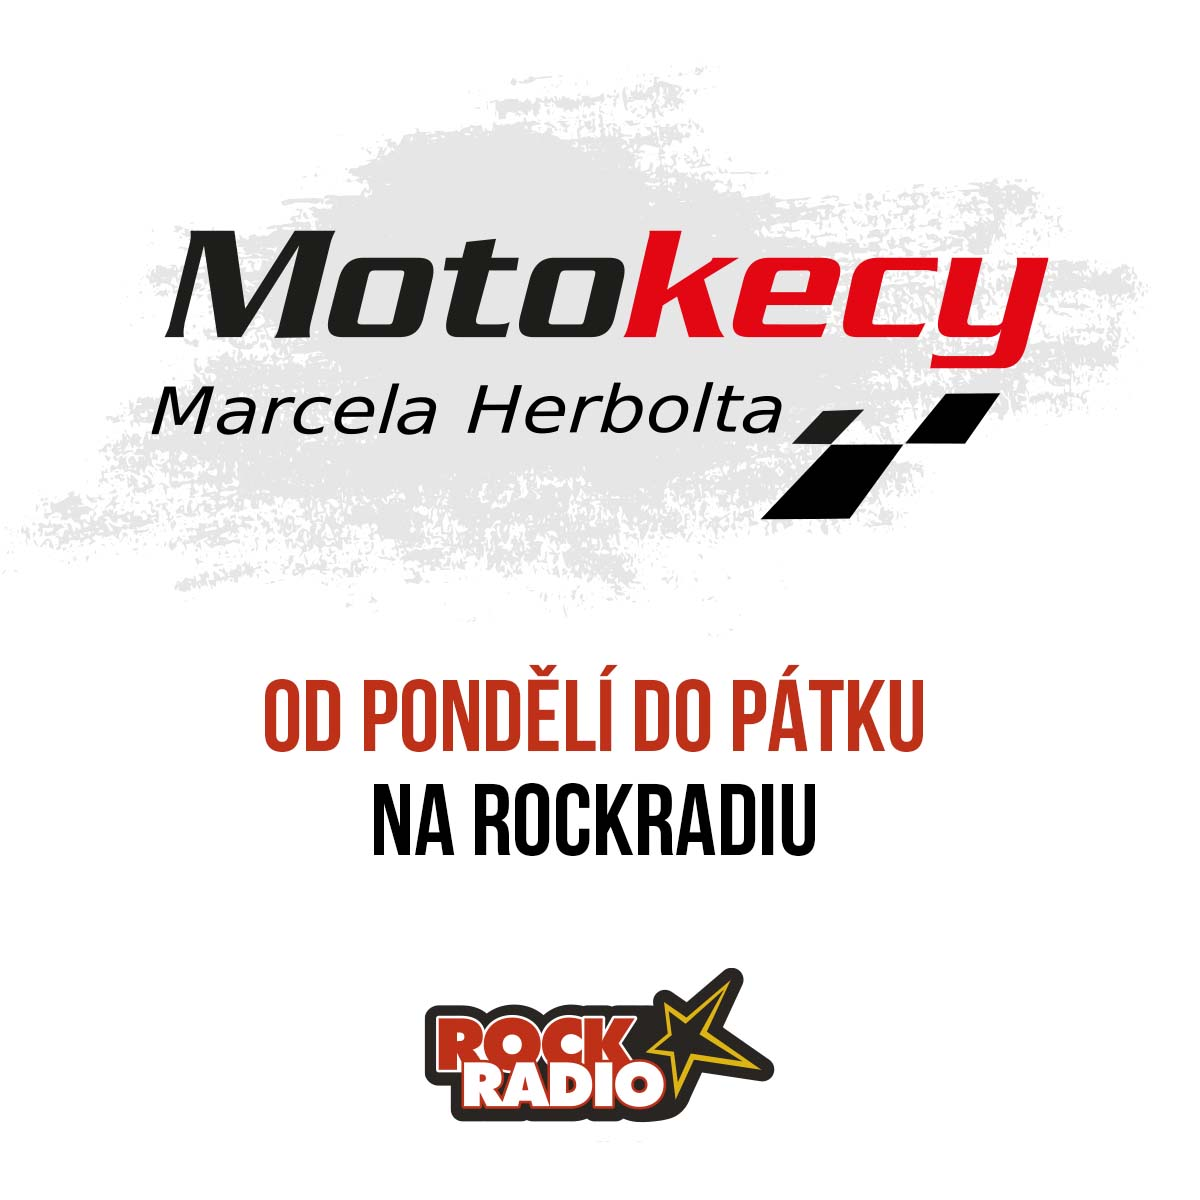 Motokecy Marcela Herbolta na středu 18. října